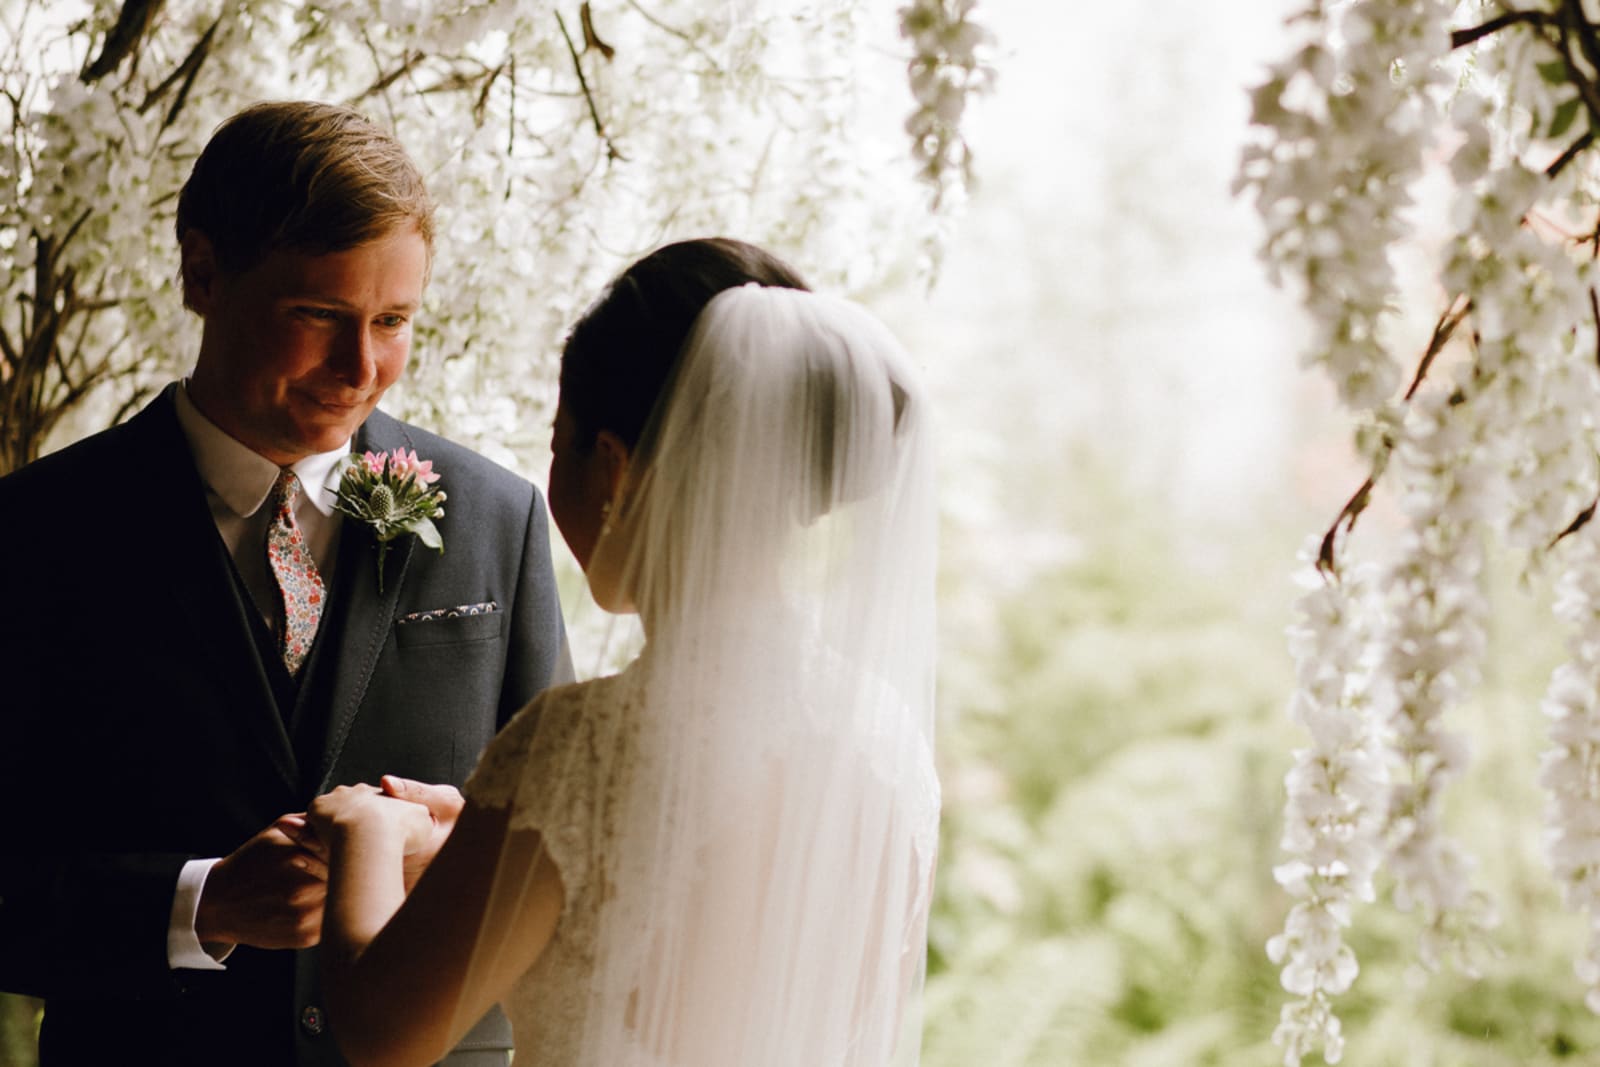 South West | Gloucestershire | Tetbury | Spring | Cultural | DIY | Outdoor | Pink | Brights | Outdoor venue | Real Wedding | Boy Called Ben Photography #Bridebook #RealWedding #WeddingIdeas Bridebook.co.uk 